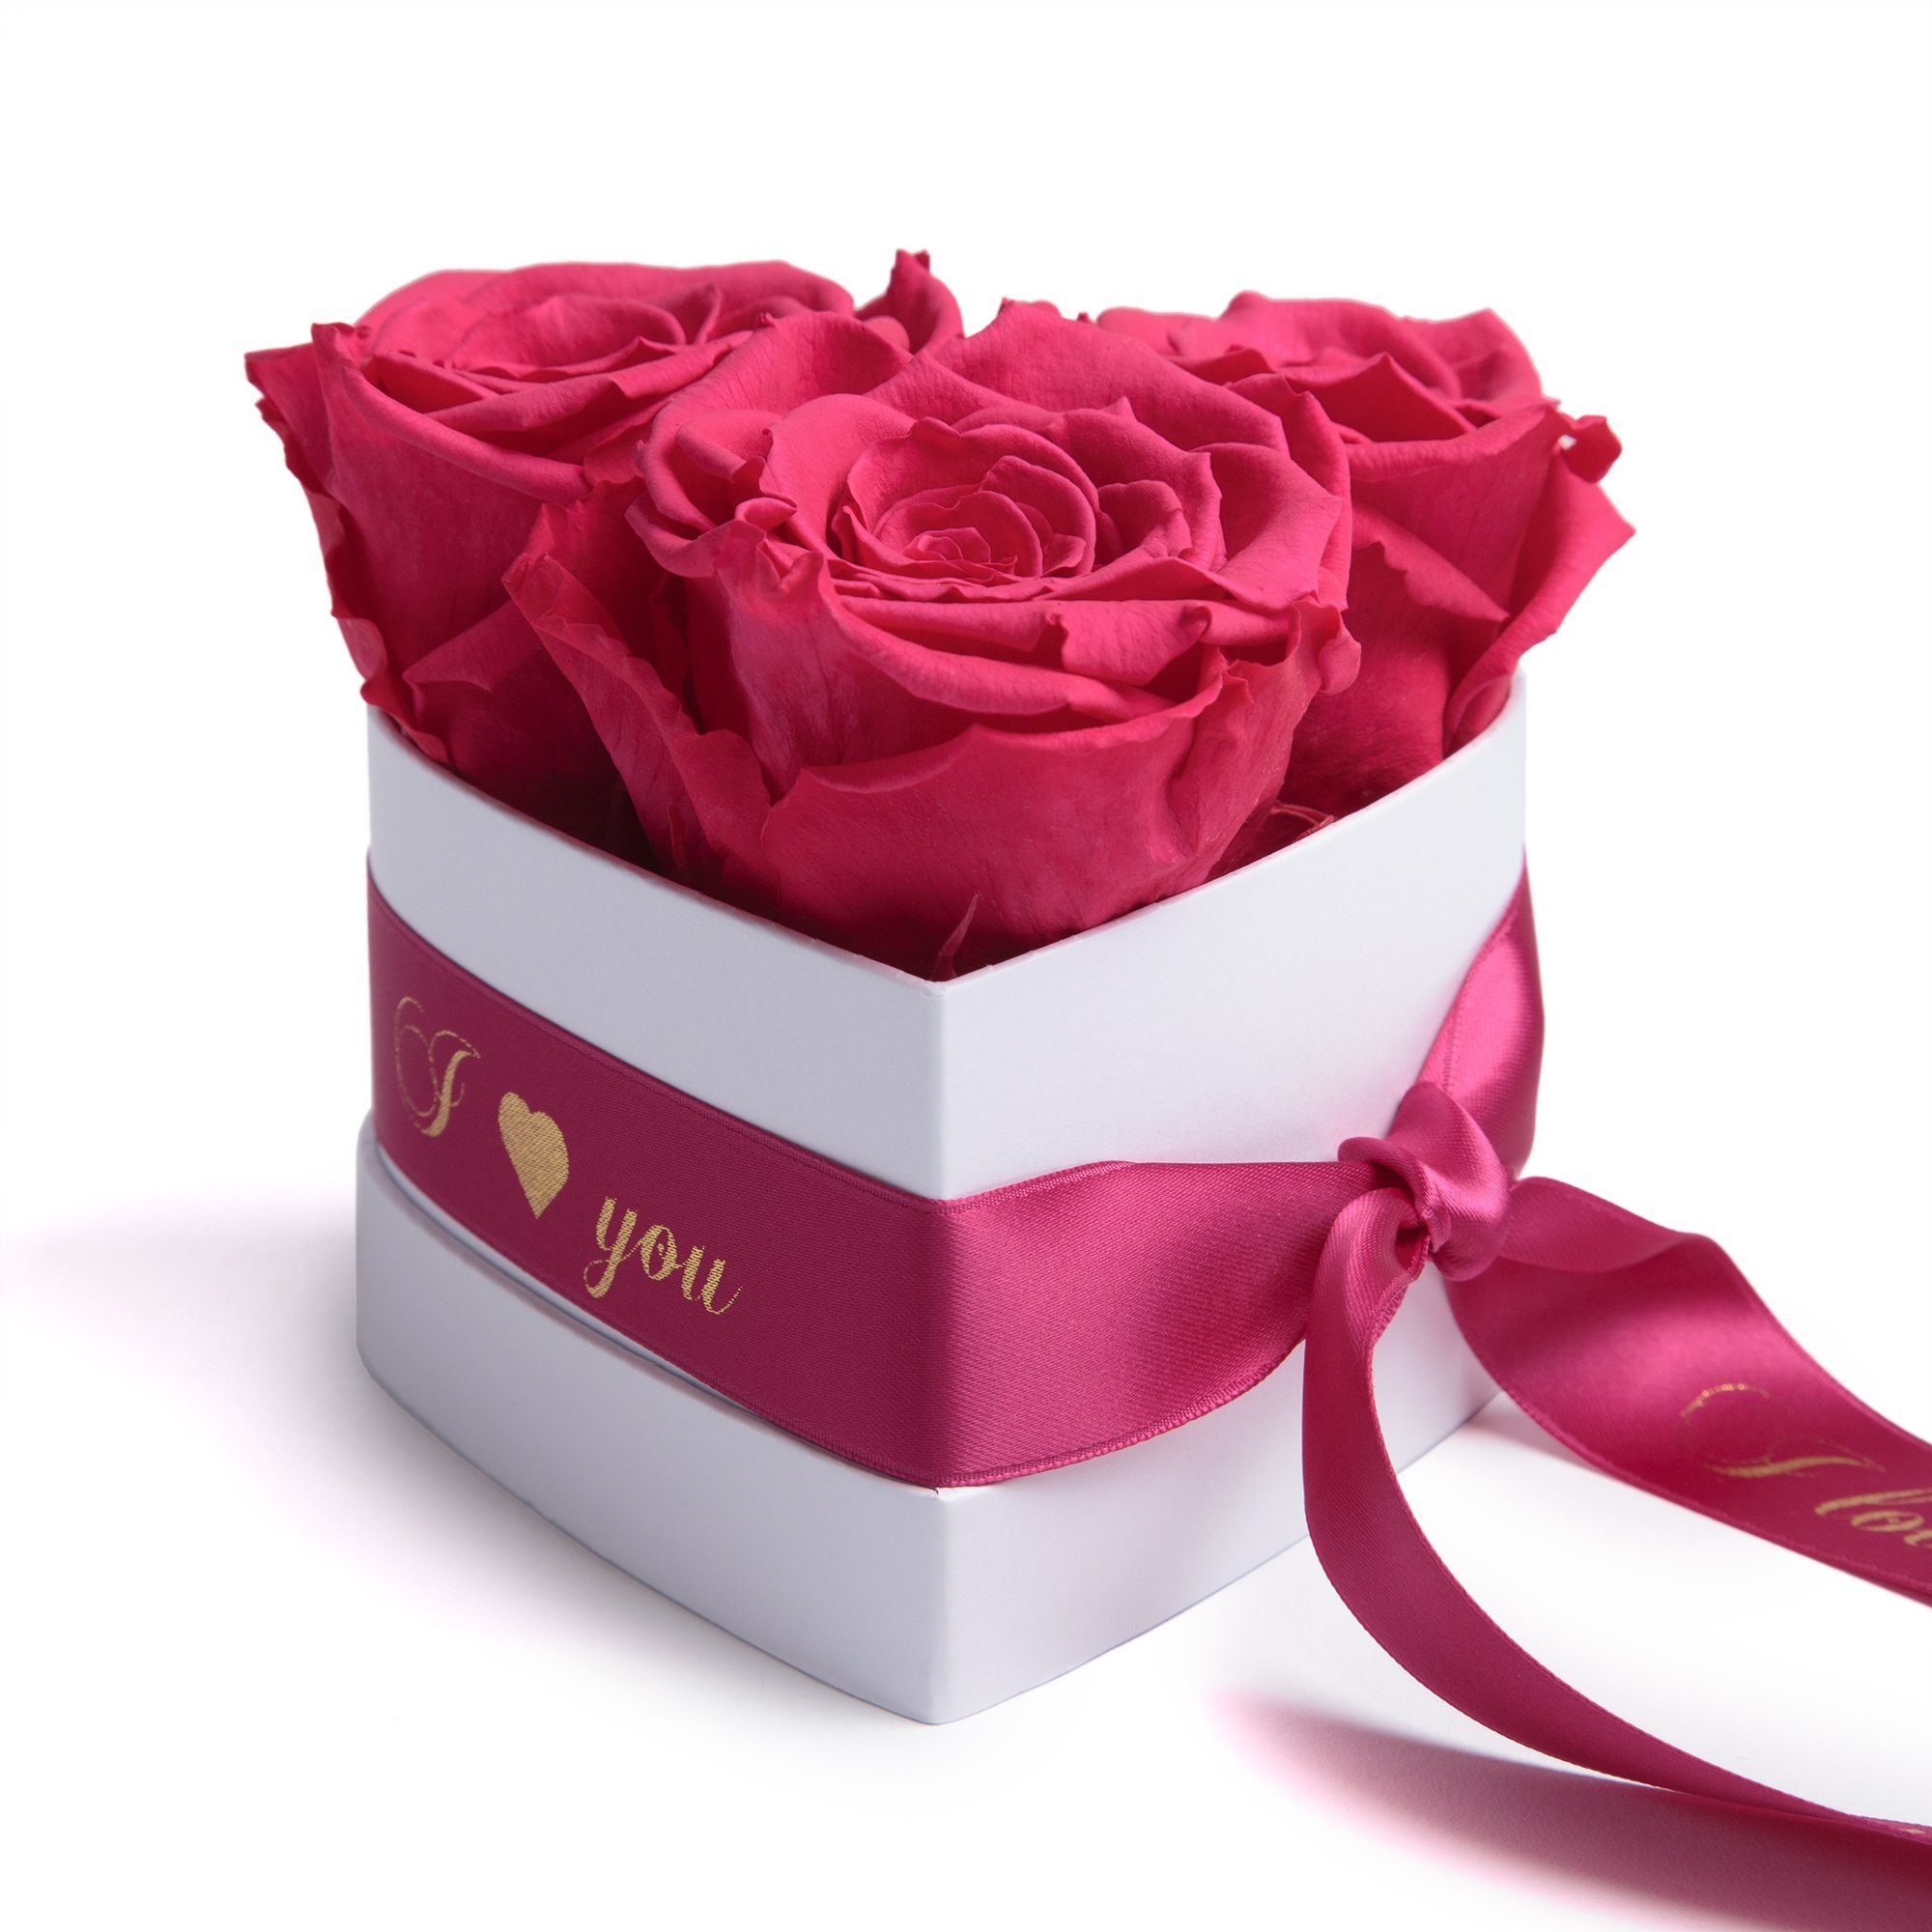 Kunstblume Rosenbox Herz 3 konservierte Infinity Rosen in Box I Love You Rose, ROSEMARIE SCHULZ Heidelberg, Höhe 8.5 cm, Valentinstag Geschenk für Sie Pink | Kunstblumen